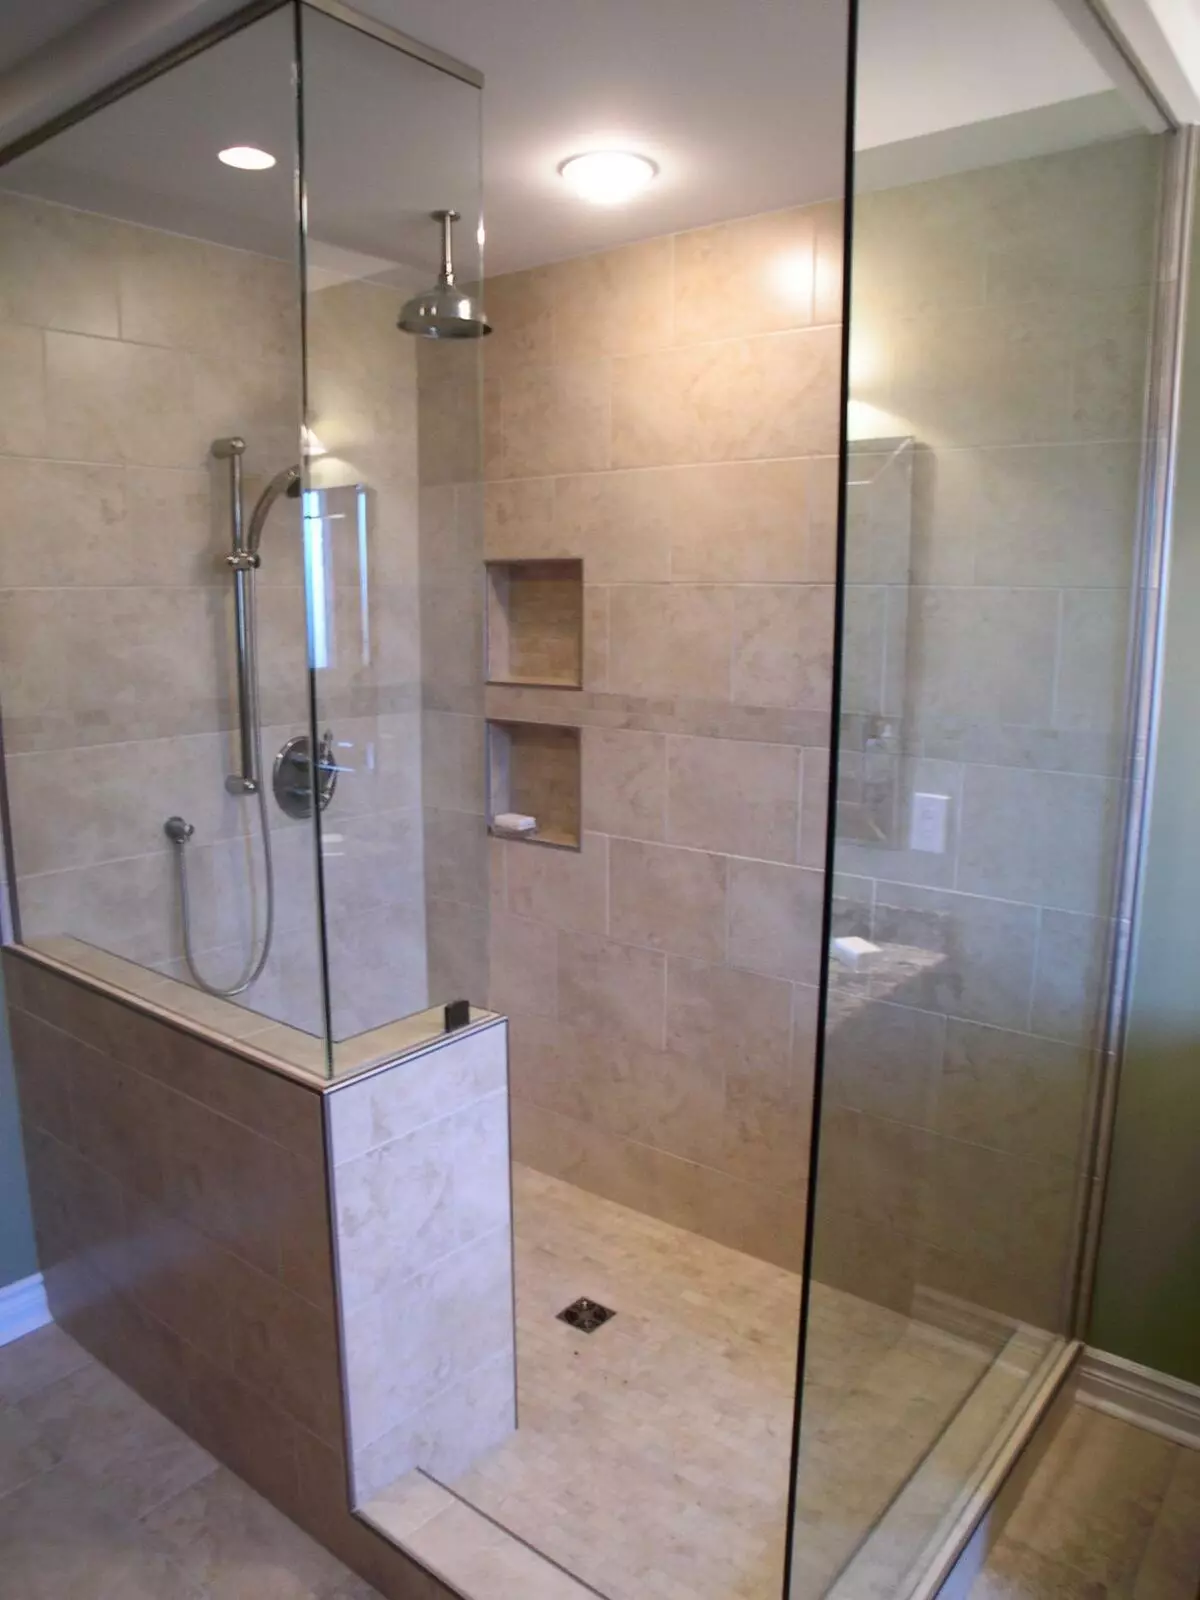 浴室沒有淋浴的淋浴（57張照片）：私人住宅和公寓內的浴室的設計和裝飾有靈魂場景 21400_5